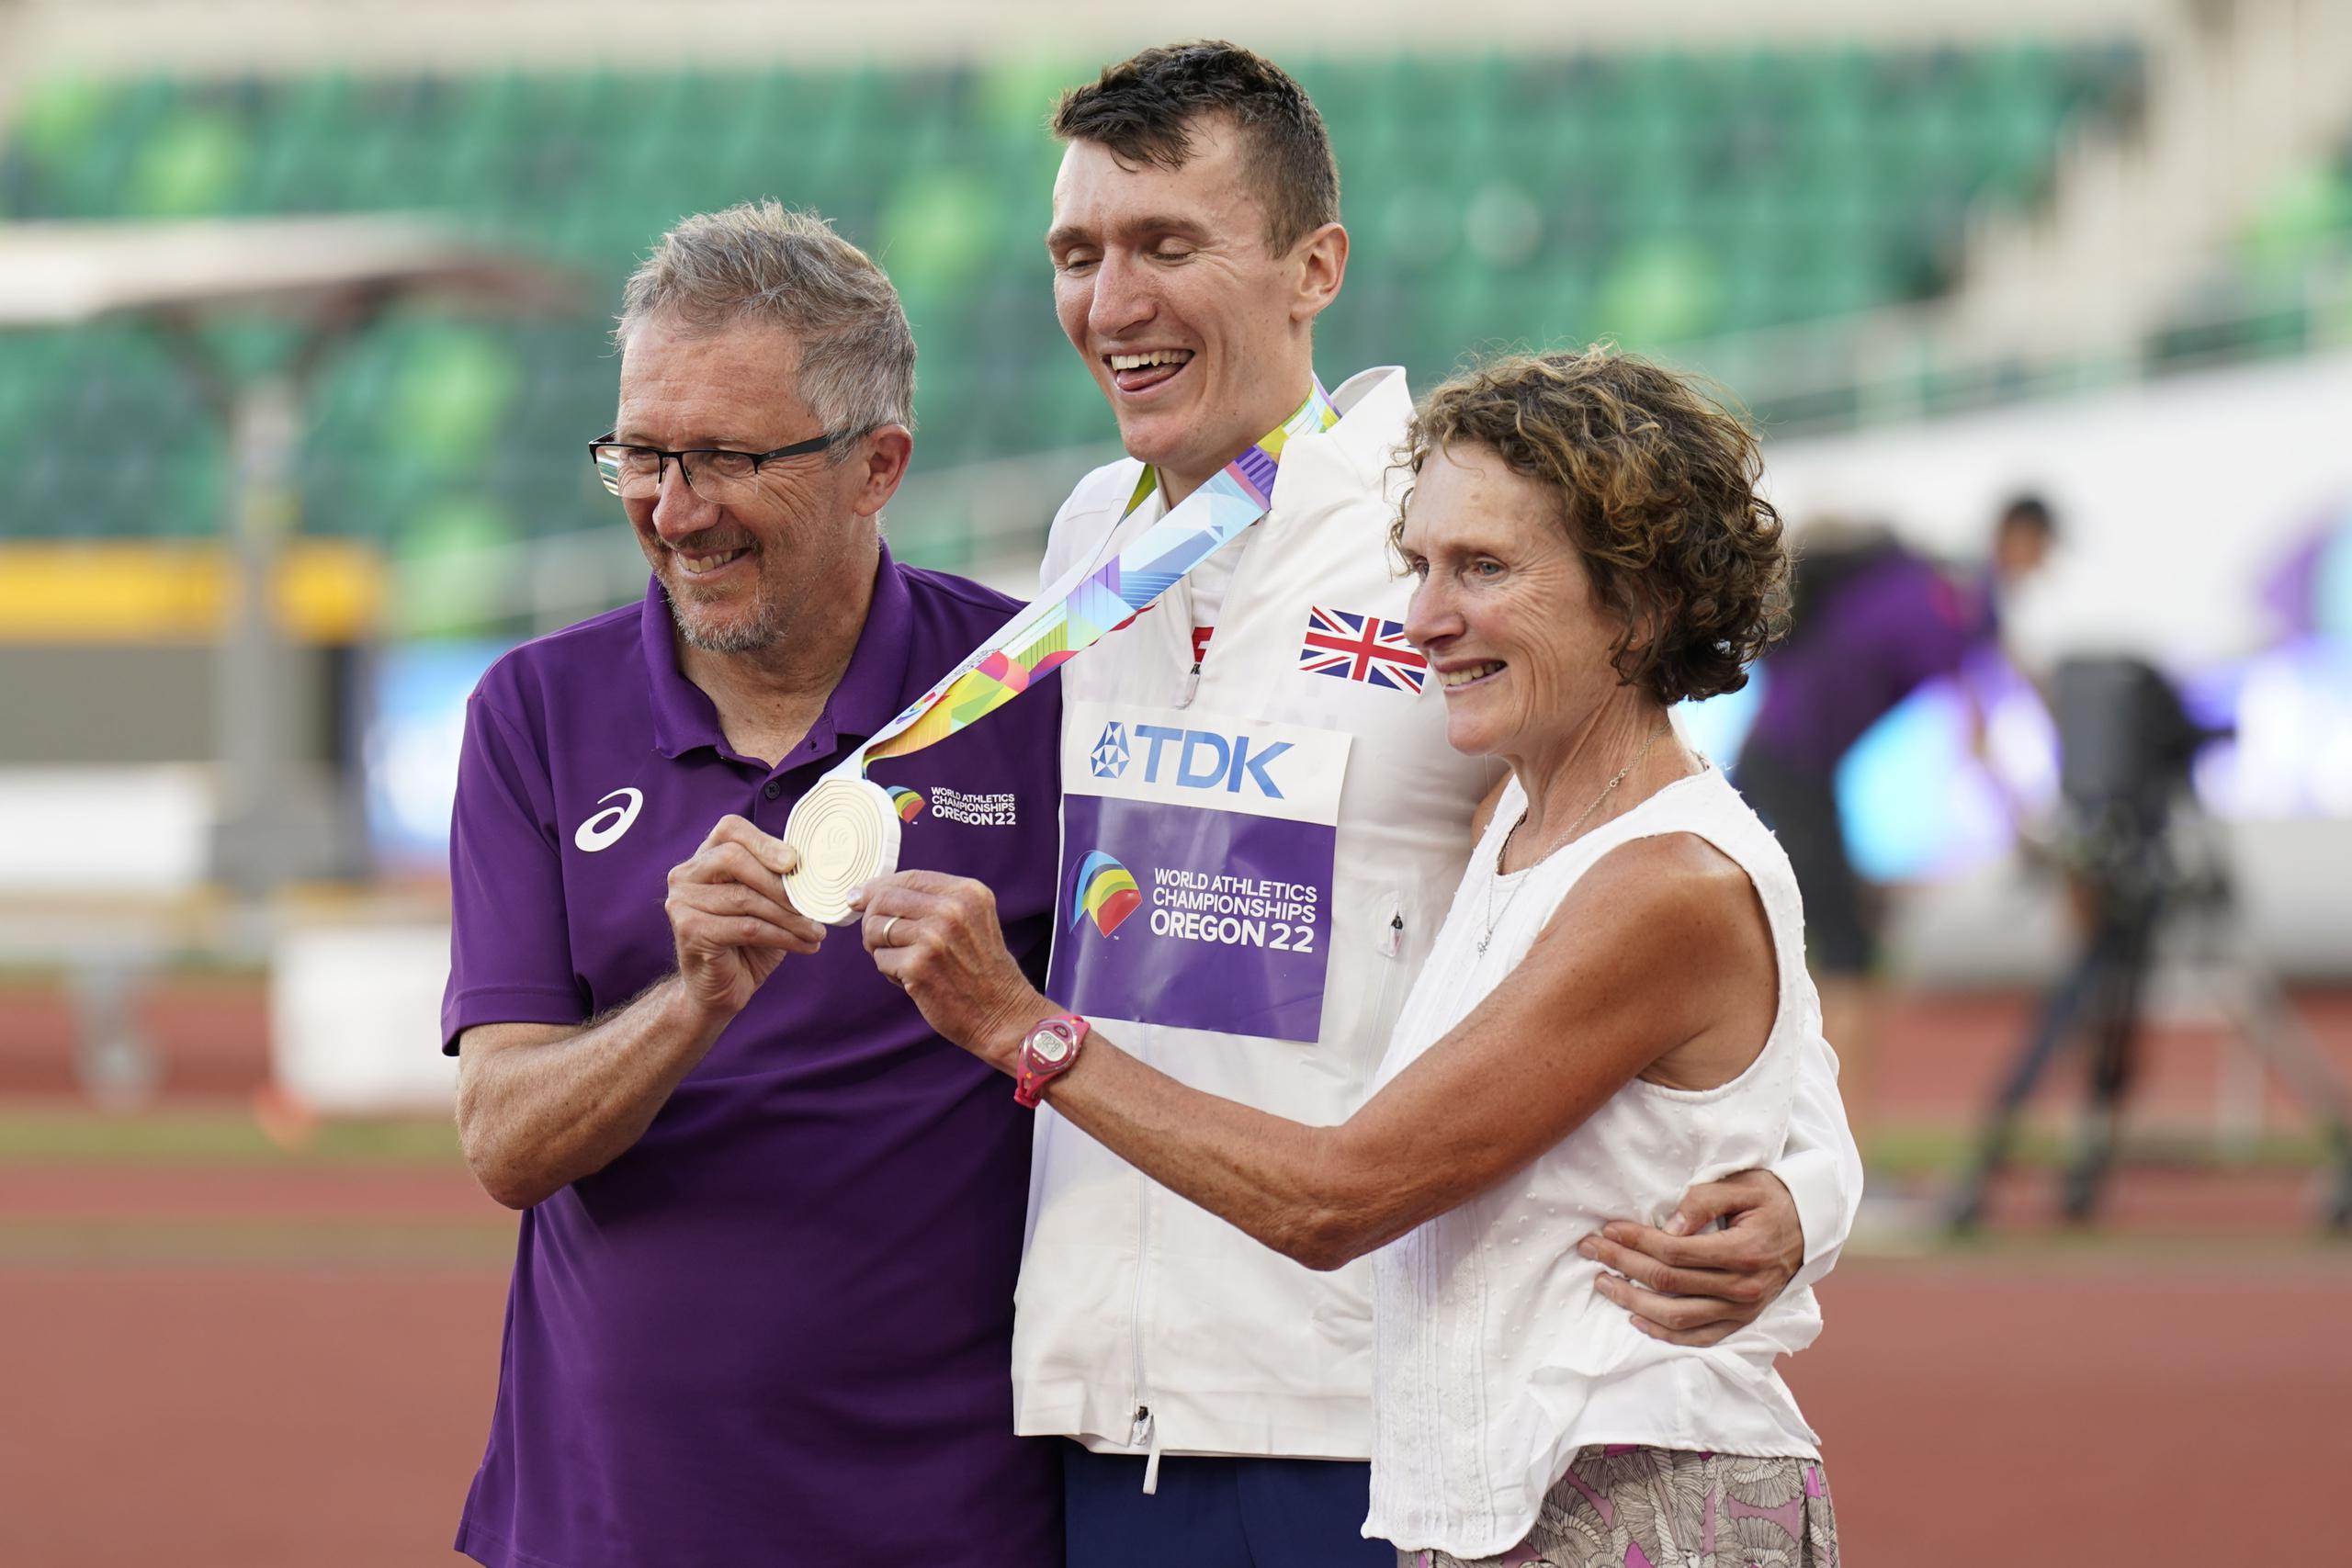 Geoff y Susan Wightman posan junto a su hijo, ganador de la medalla de oro de los 1,500 metros, Jake Wightman. La carrera fue narrada por Geoff, quien es además el entrenador del medallista. Y este sorprendió al ser el merecedor del oro.